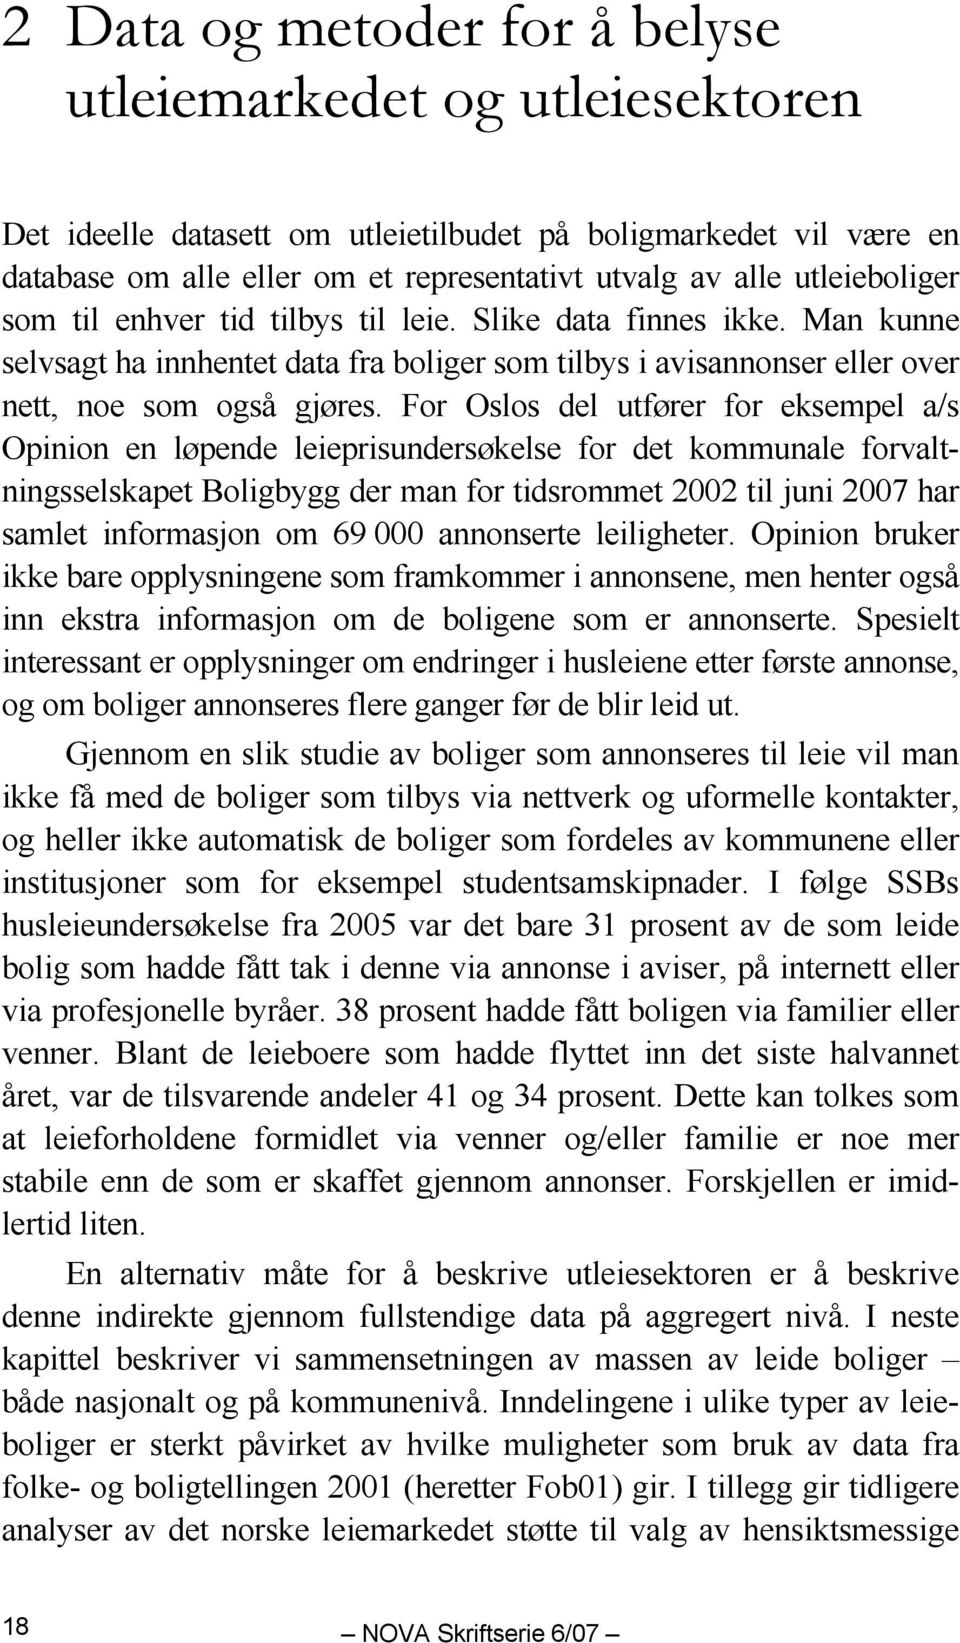 For Oslos del utfører for eksempel a/s Opinion en løpende leieprisundersøkelse for det kommunale forvaltningsselskapet Boligbygg der man for tidsrommet 2002 til juni 2007 har samlet informasjon om 69